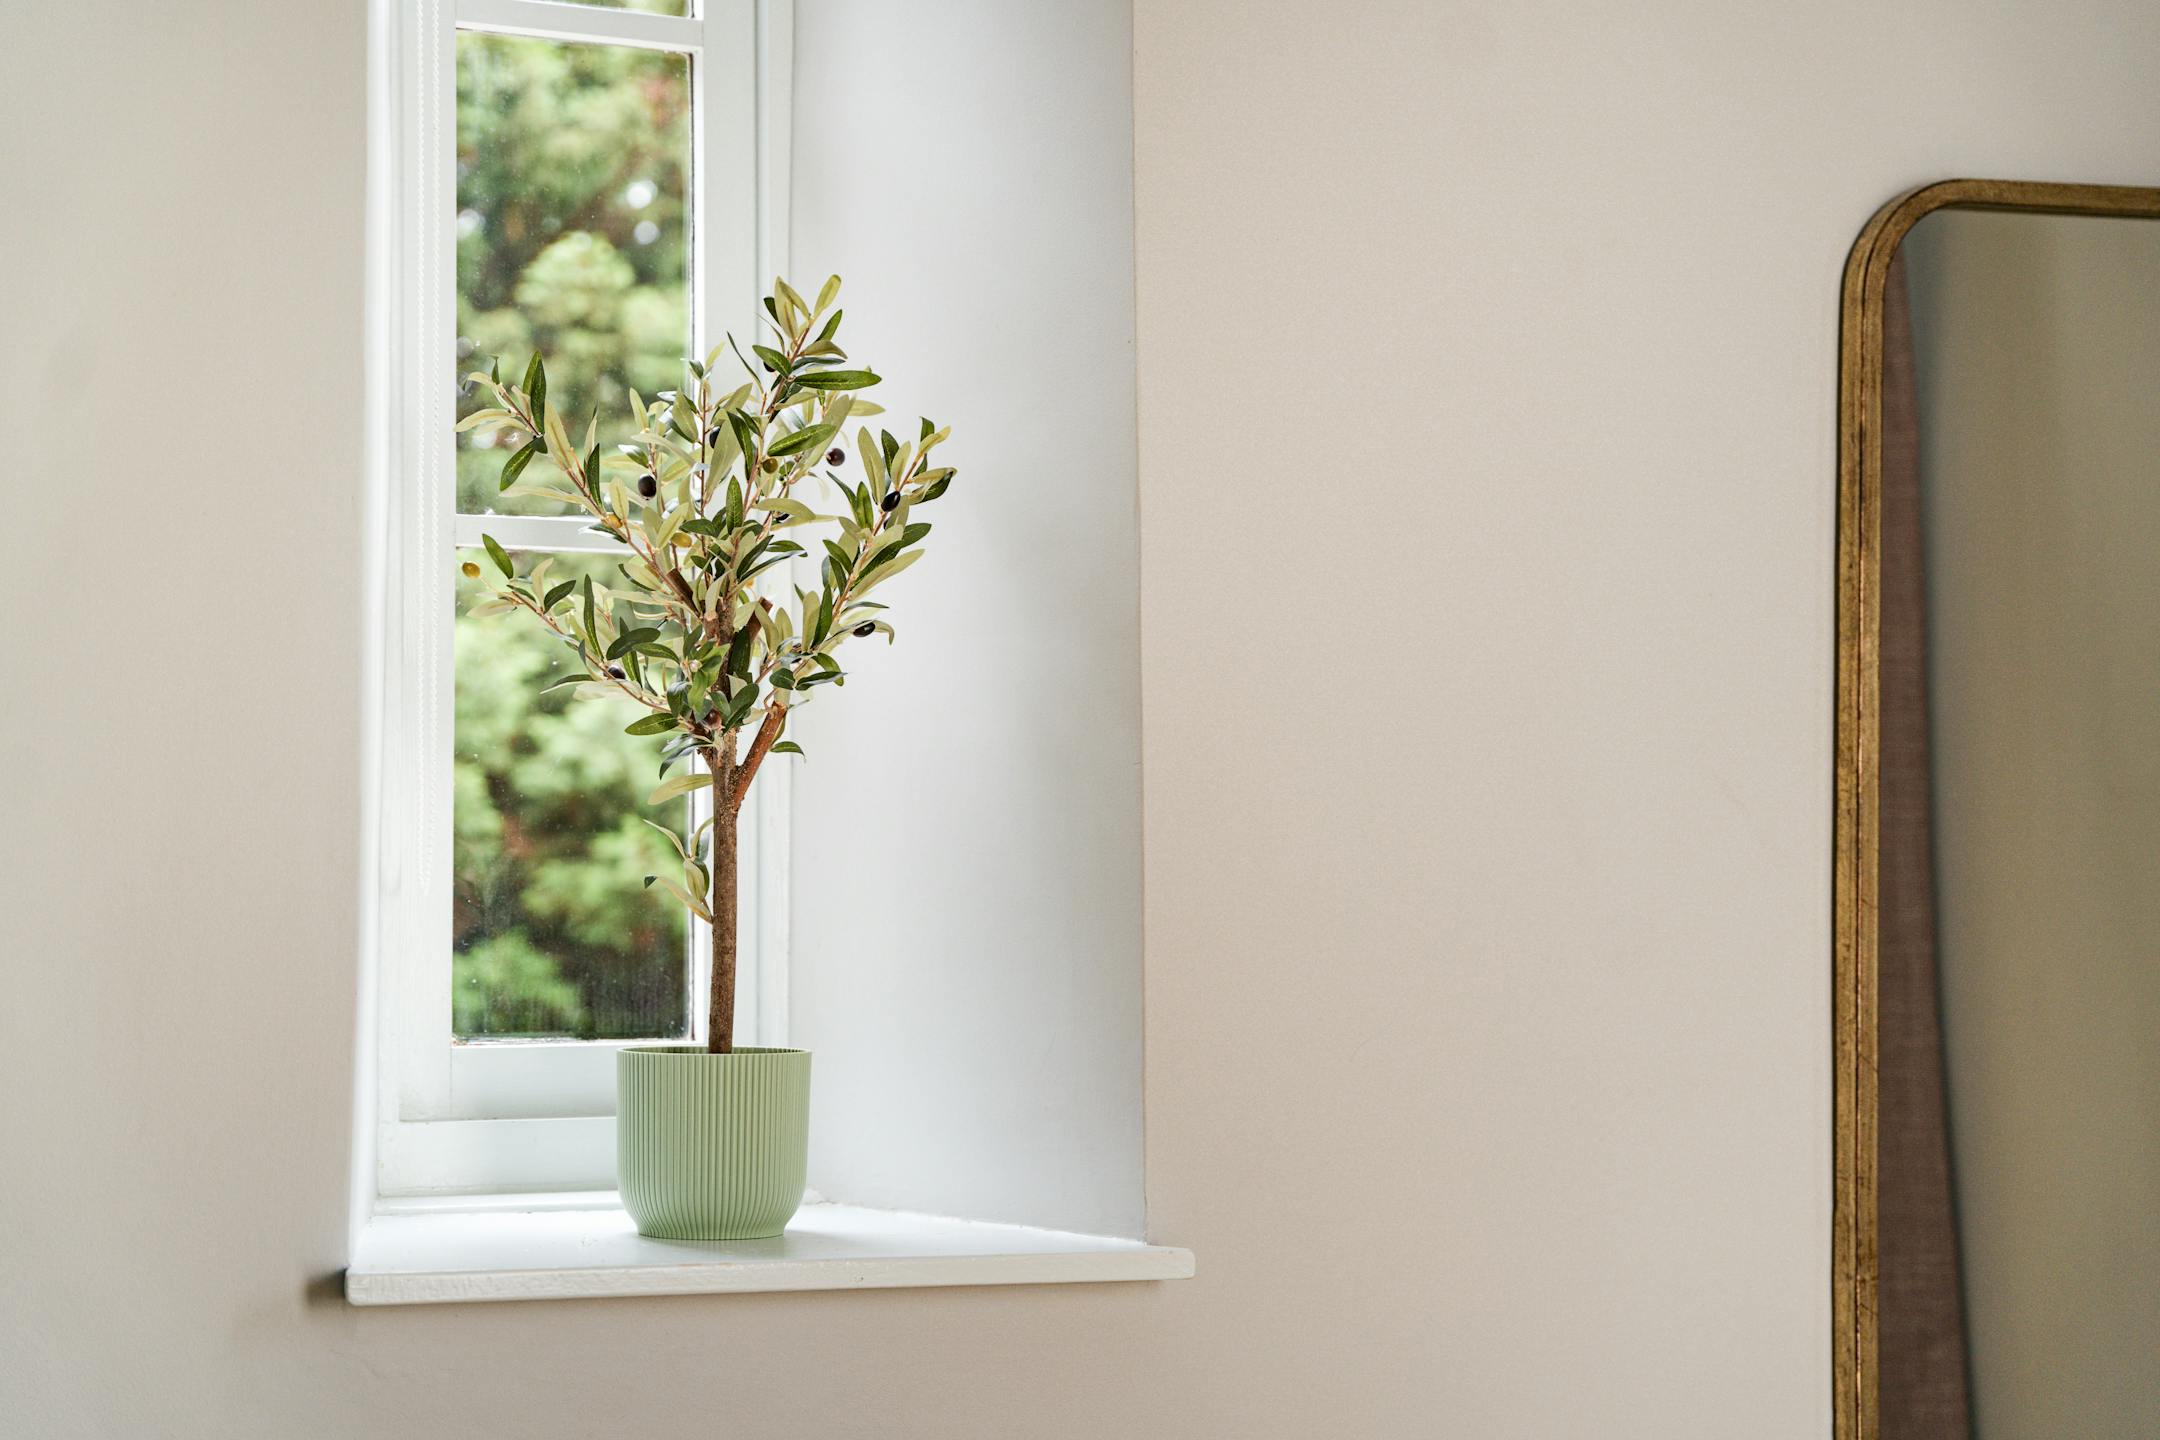 Artificial mini olive tree on window sill